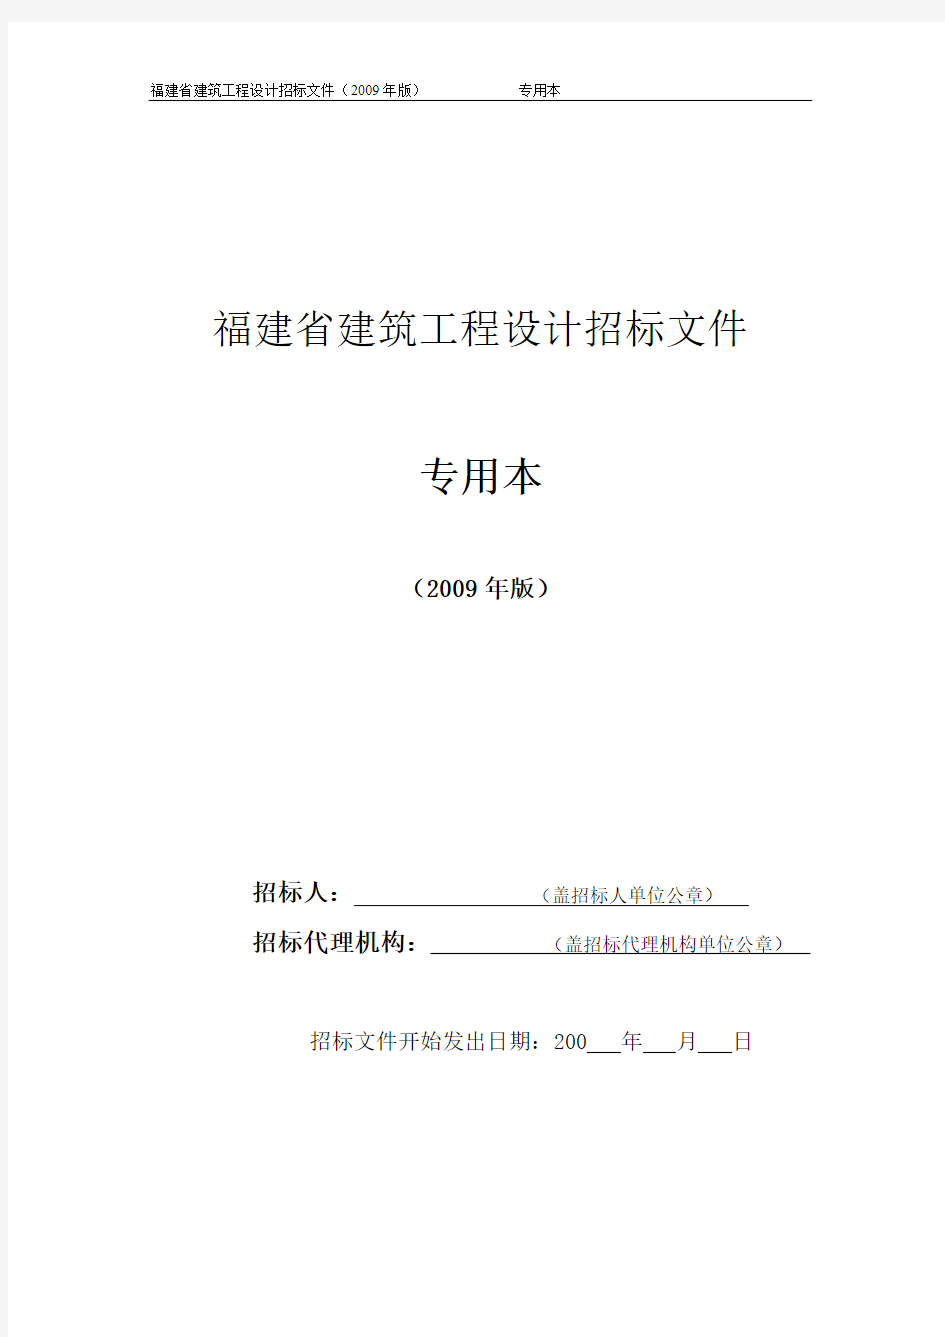 福建省建筑工程设计招标文件(2009年版)专用本